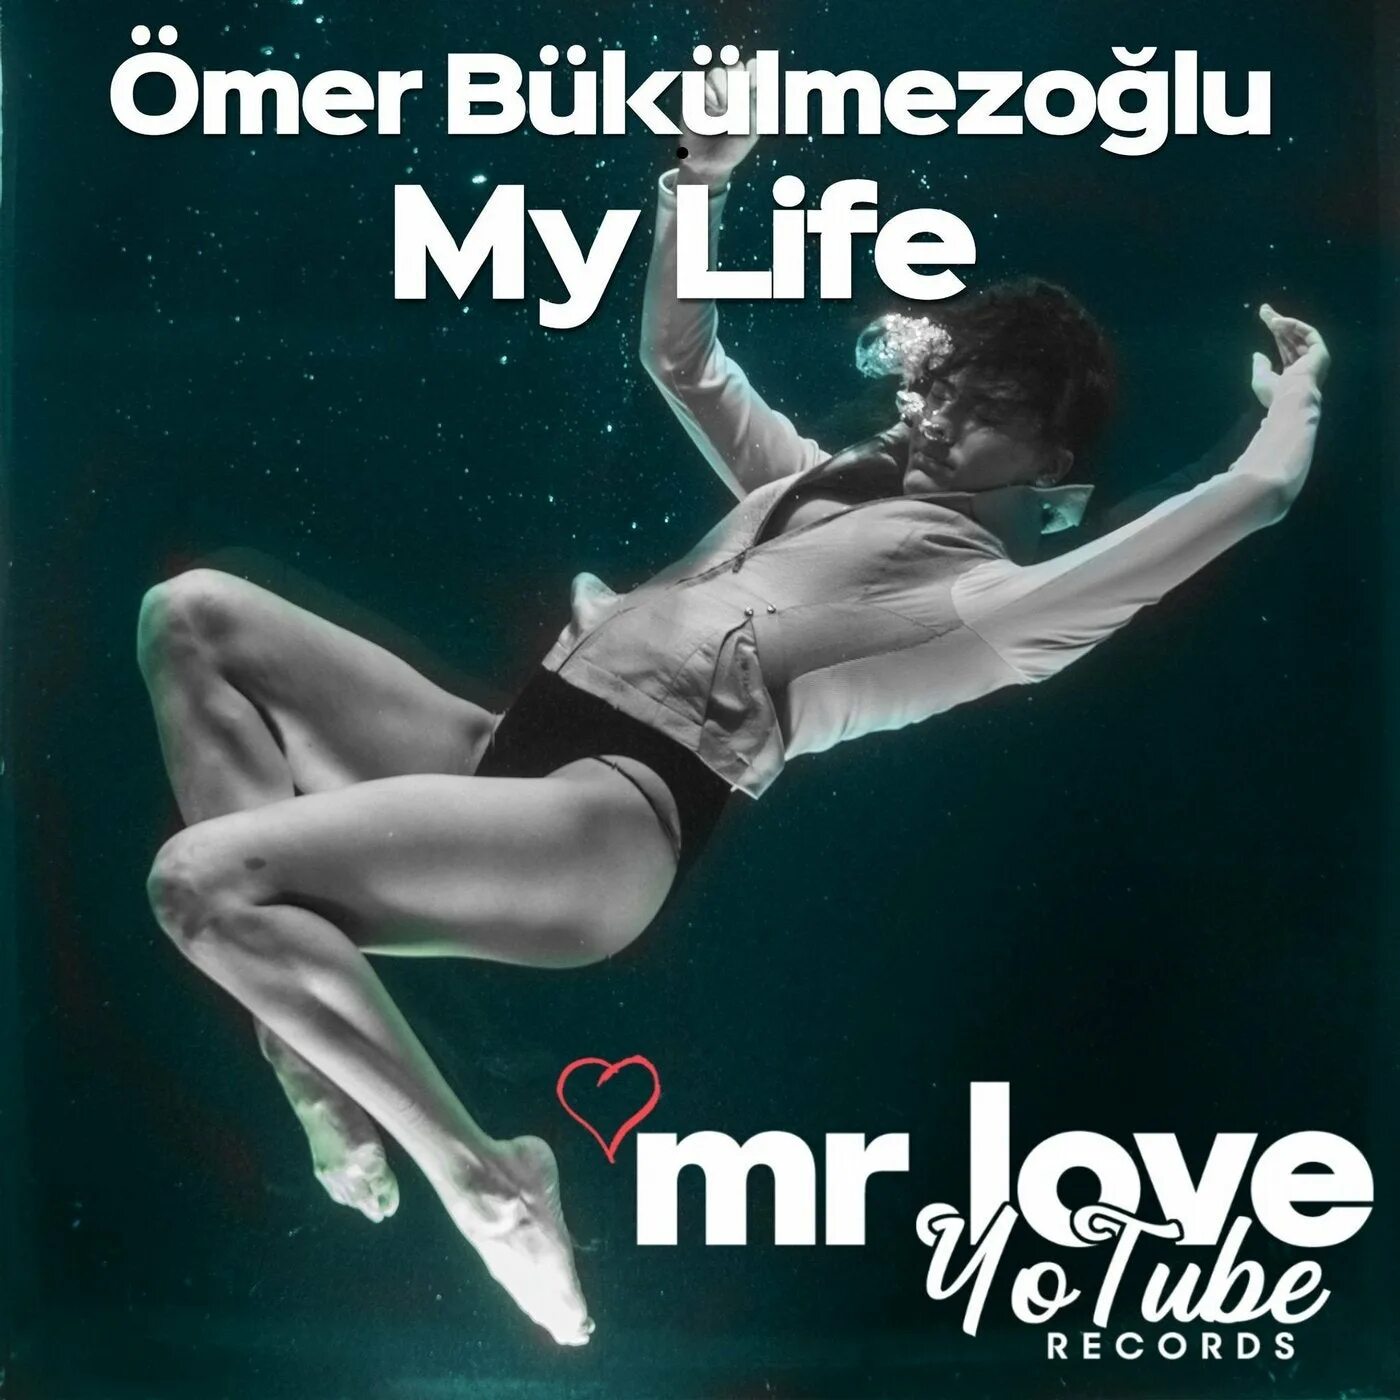 Roe pette. Омер букулмезоглу. Roe Omer Bukulmezoglu. Ömer Bükülmezoğlu исполнитель. My self от Ömer Bükülmezoğlu.